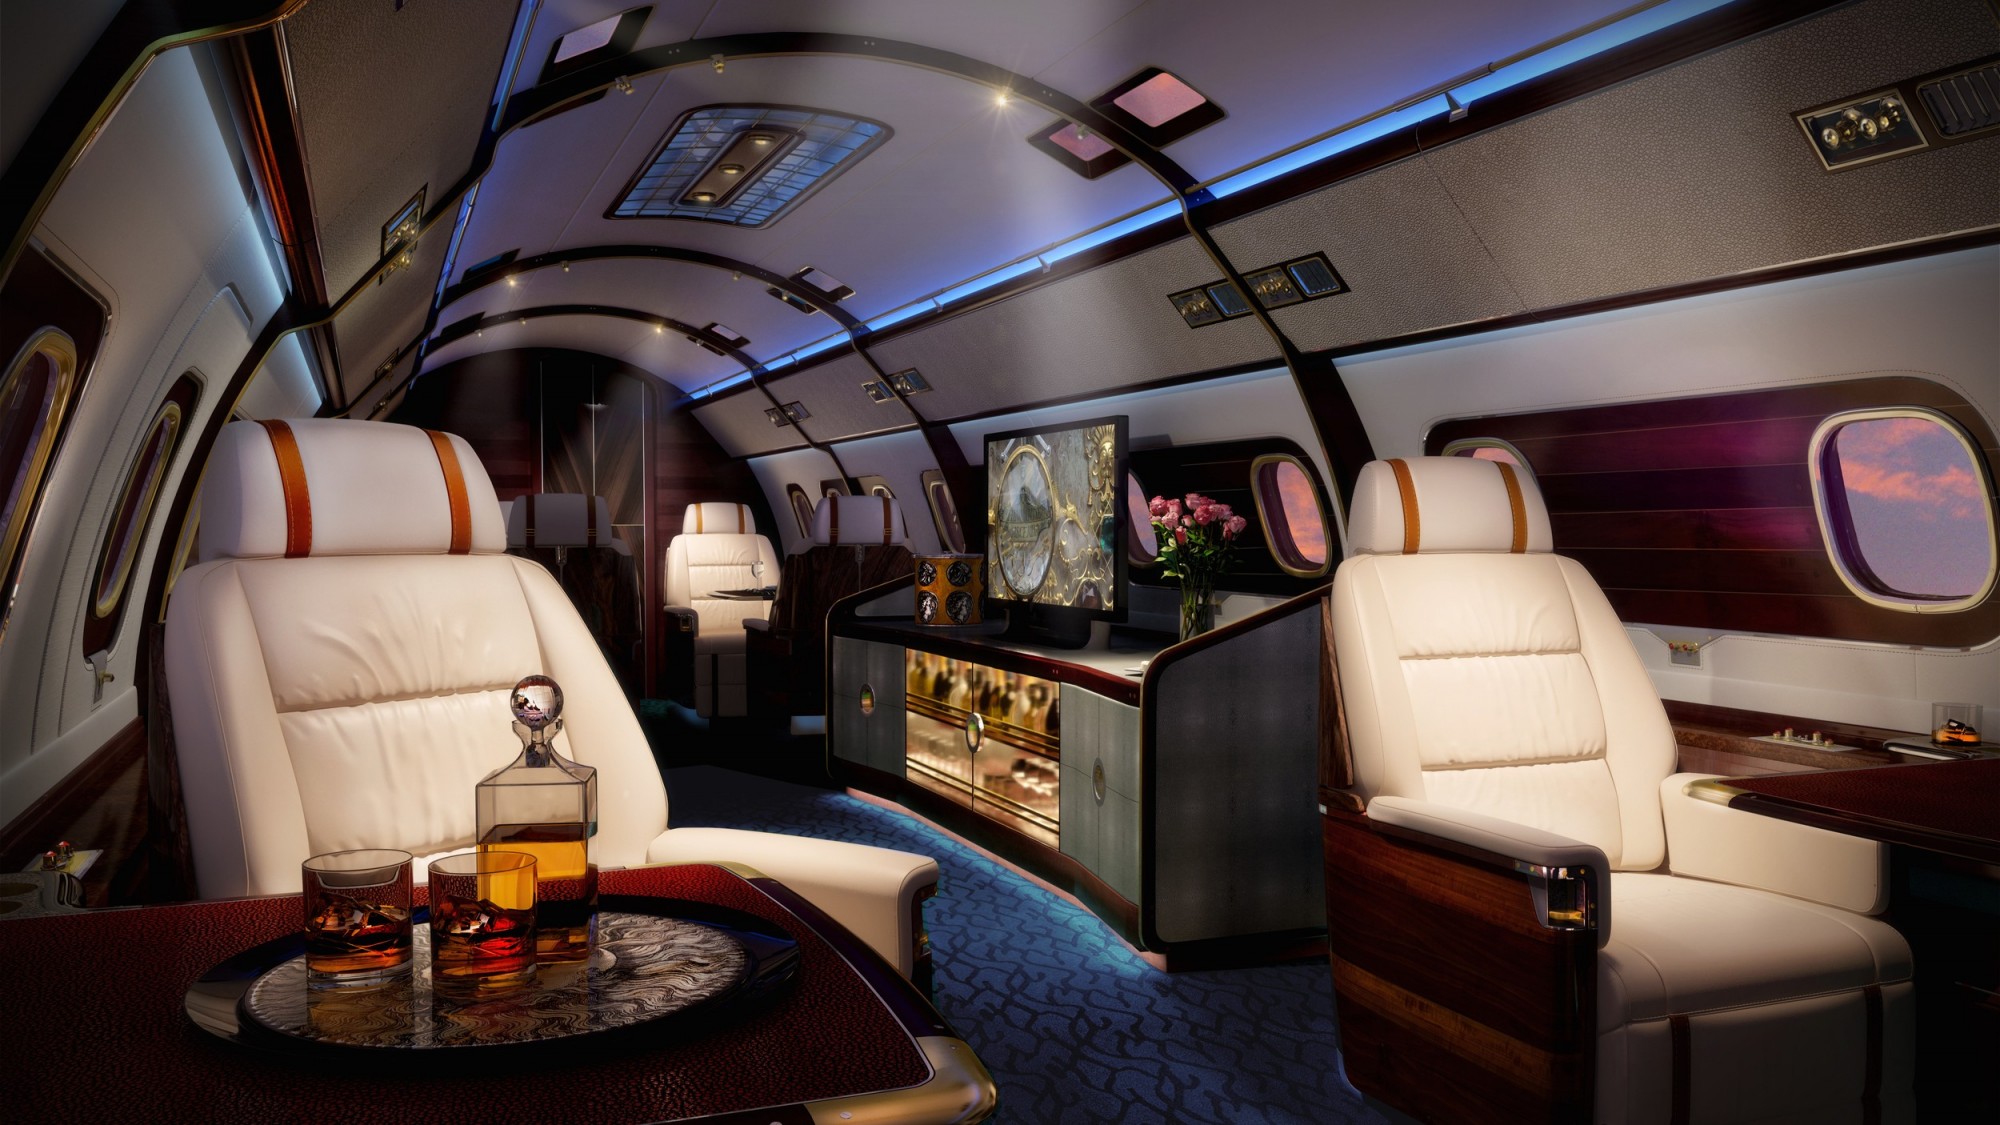 luxury plane cockpit